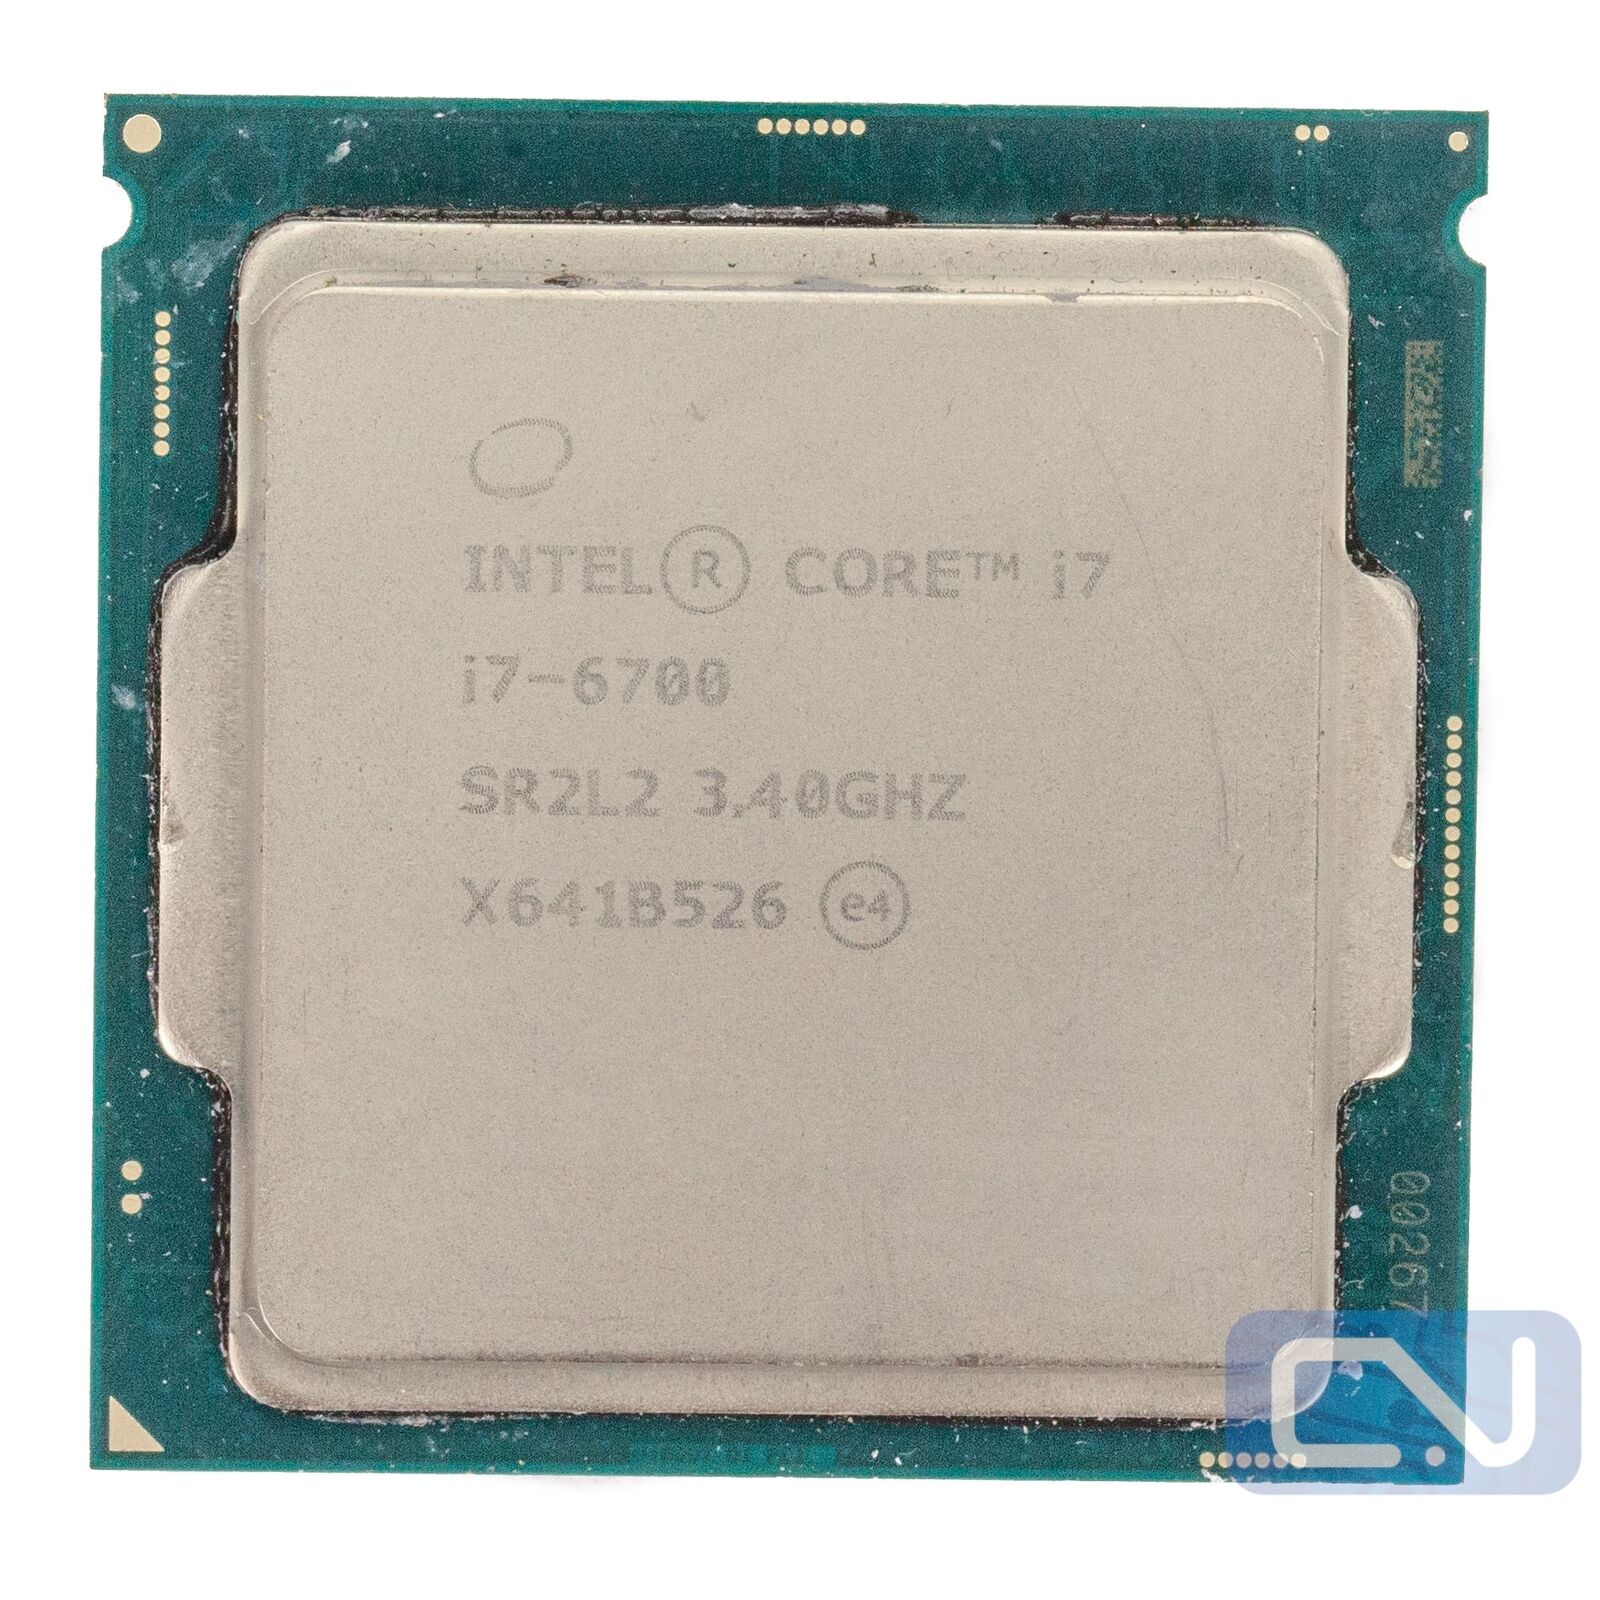 Intel Core i7-6700 3.4GHz 8MB 8GT/s SR2L2 LGA1151 B Grade CPU Processor